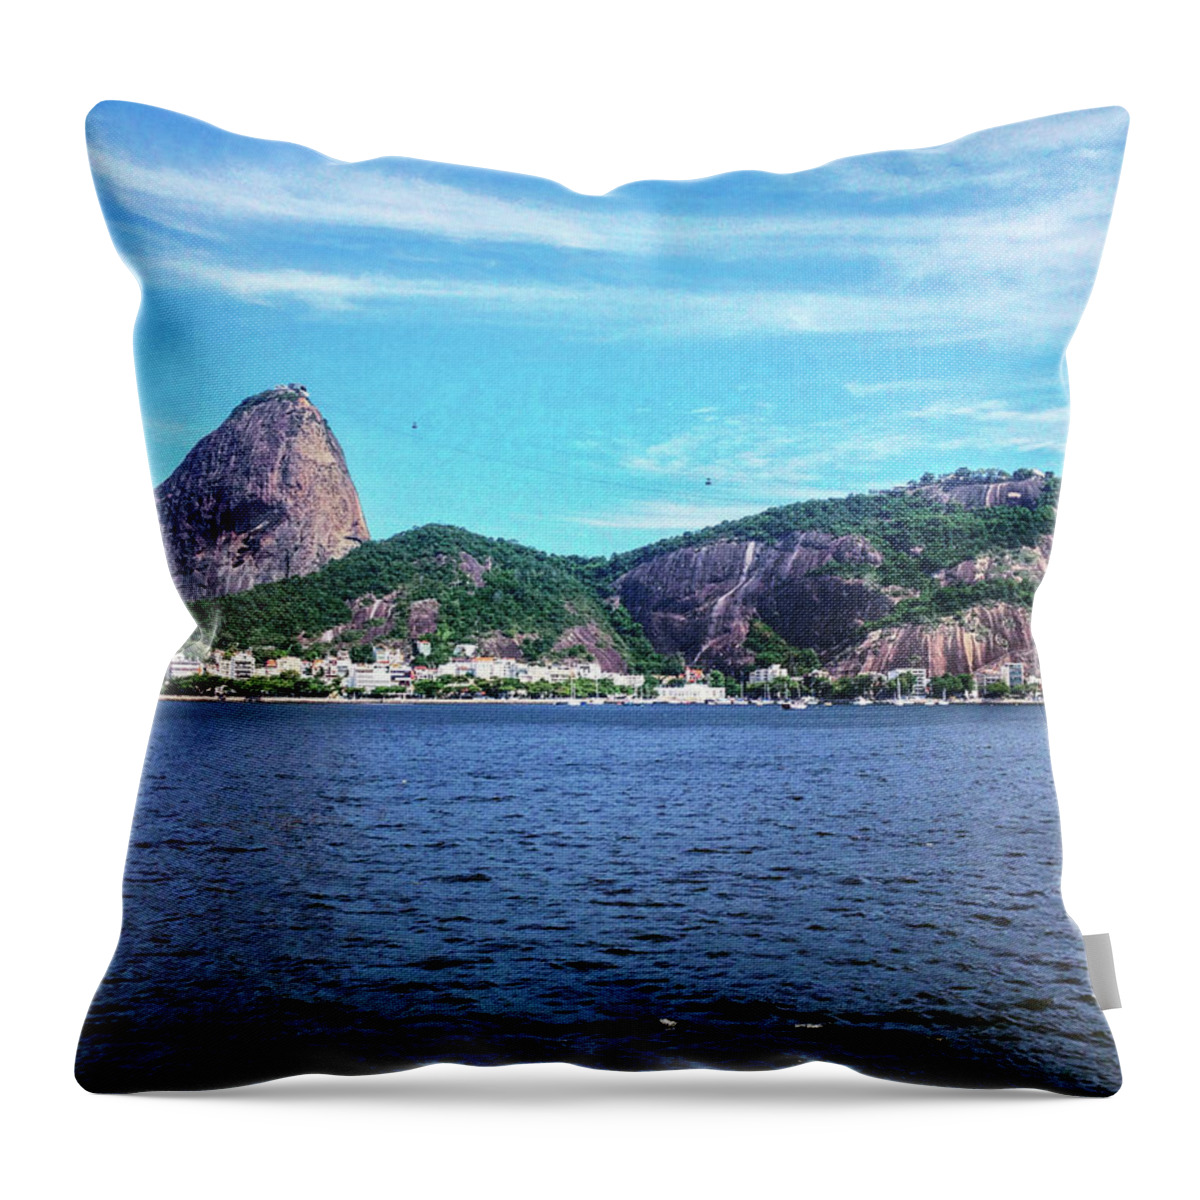 Ipanema Throw Pillow featuring the photograph Rio de Janeiro #94 by Cesar Vieira